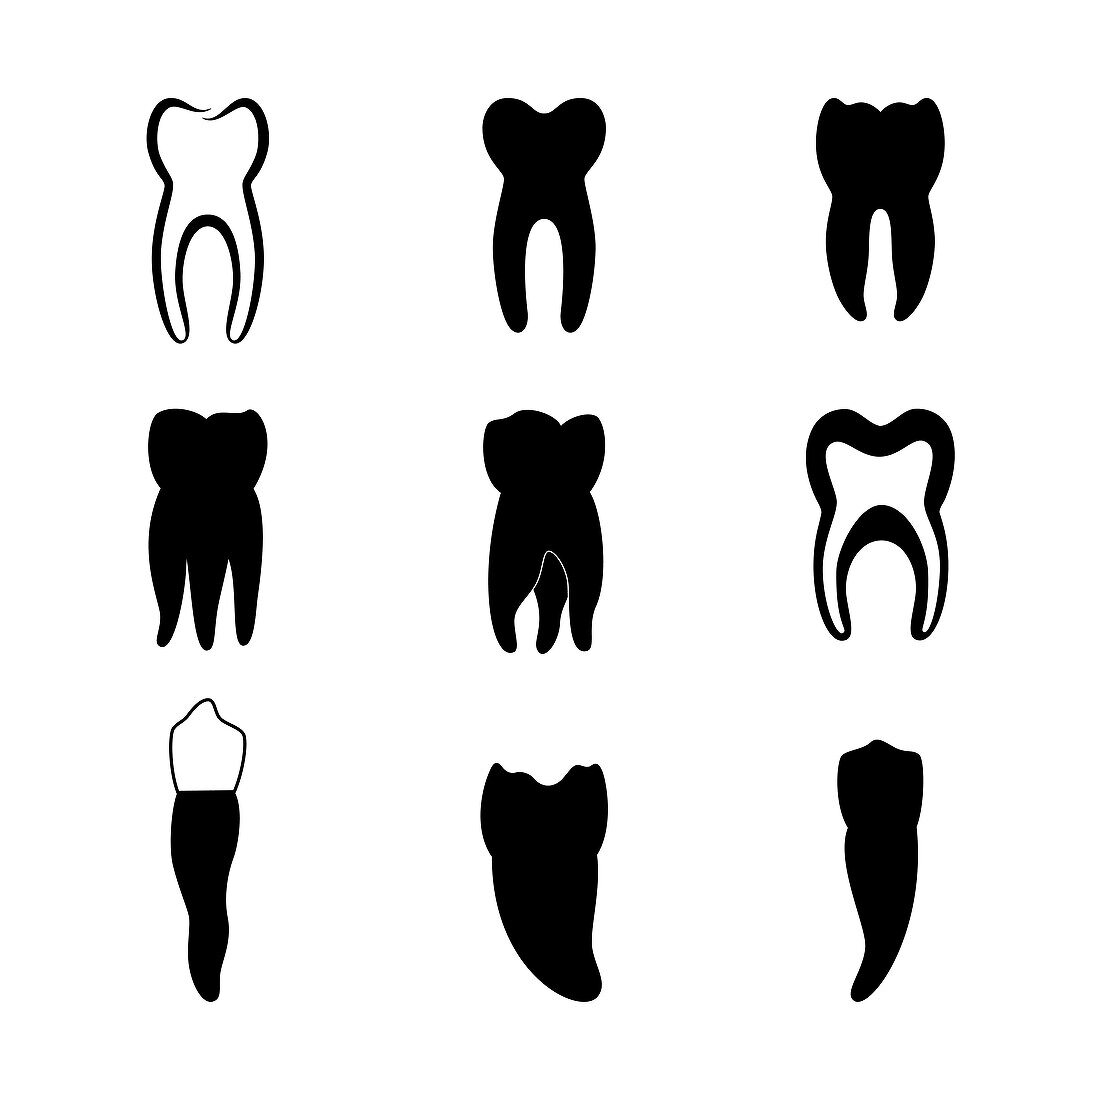 Teeth, illustration